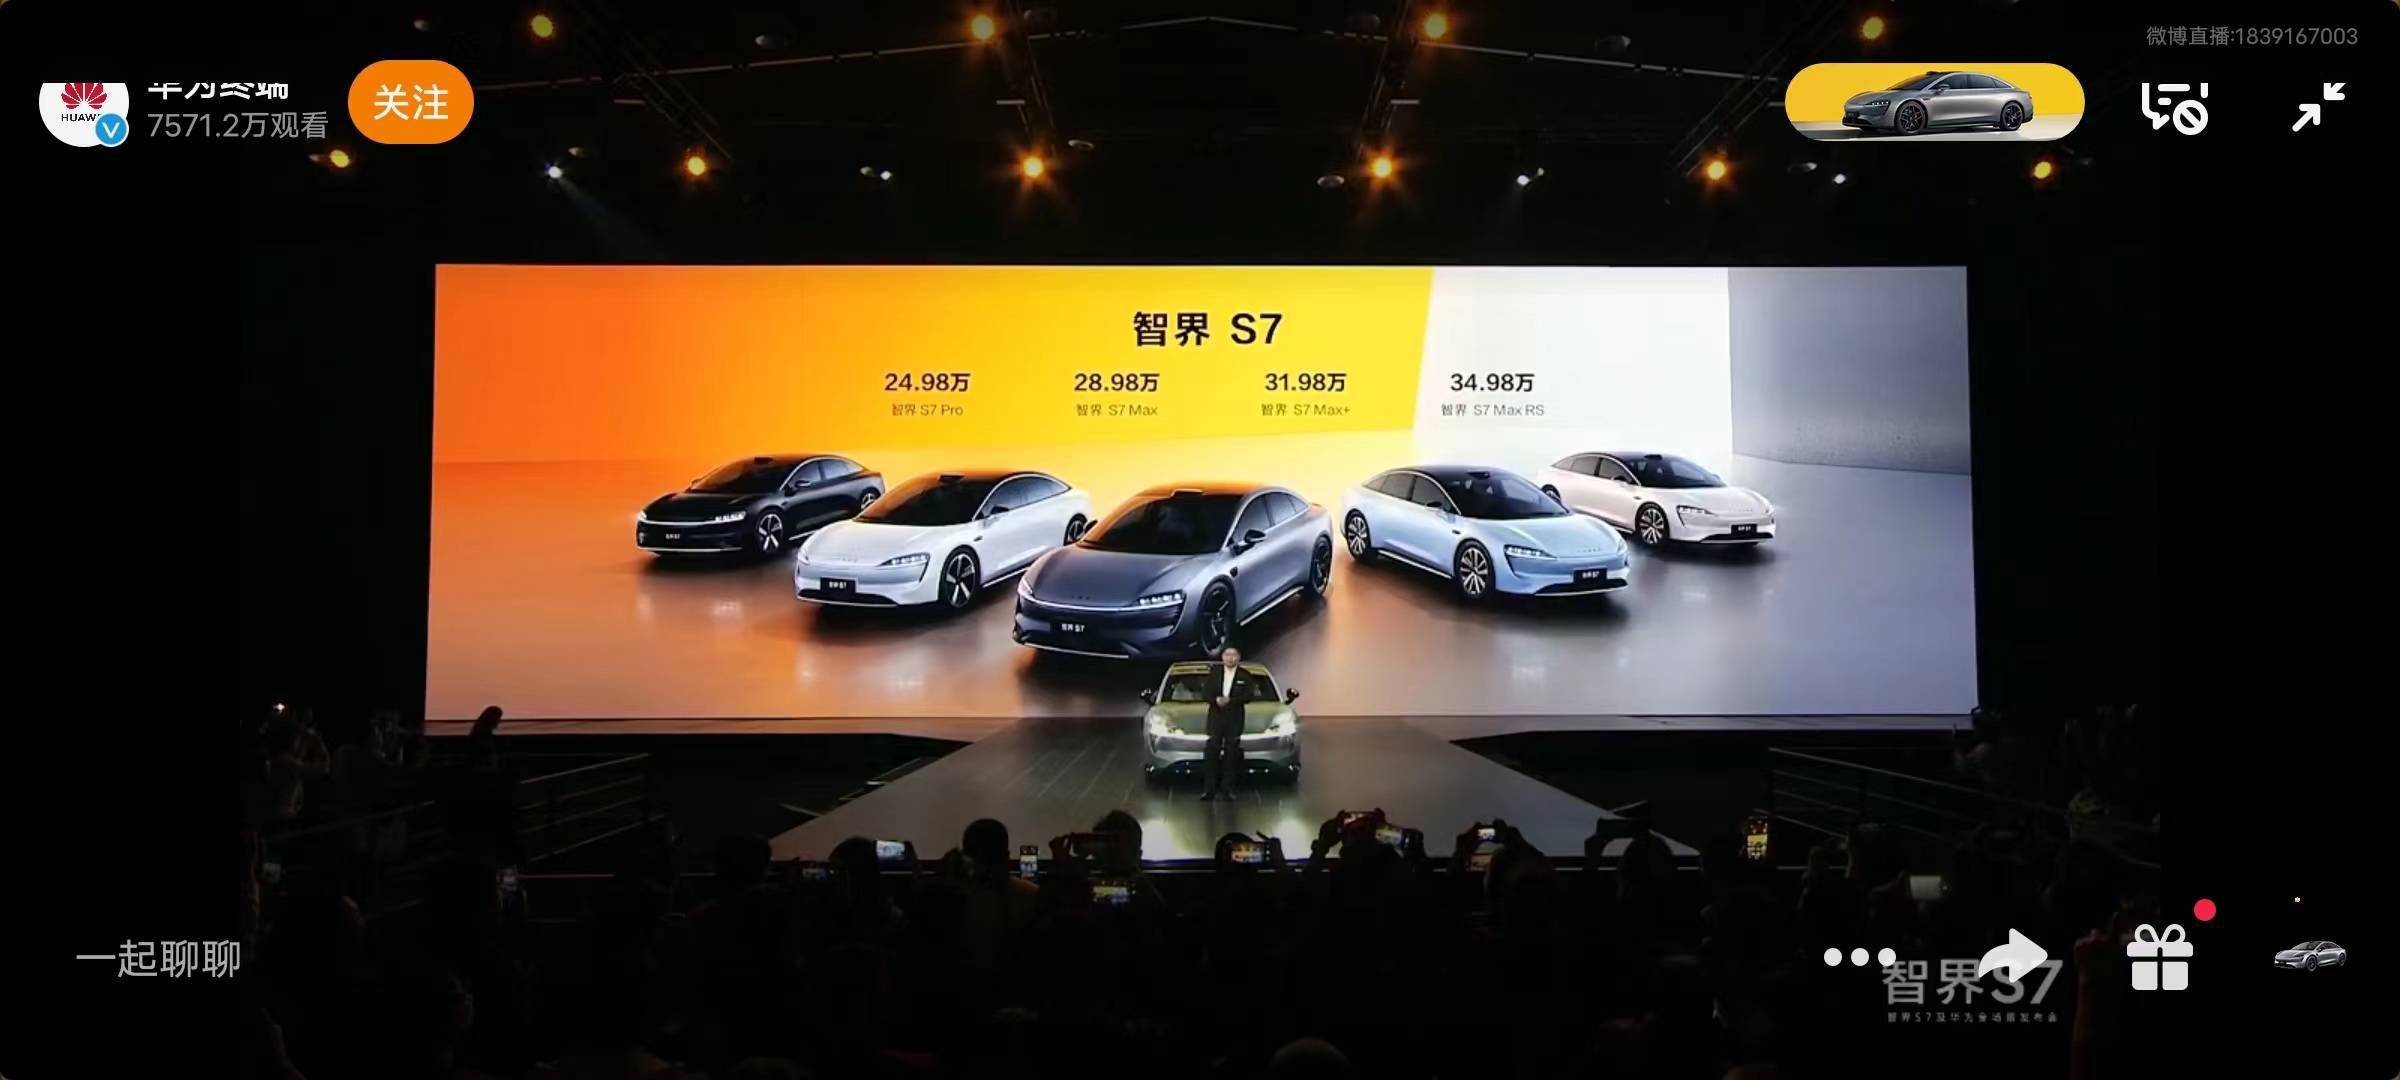 华为正式发布智界 S7 汽车，24.98万元起售